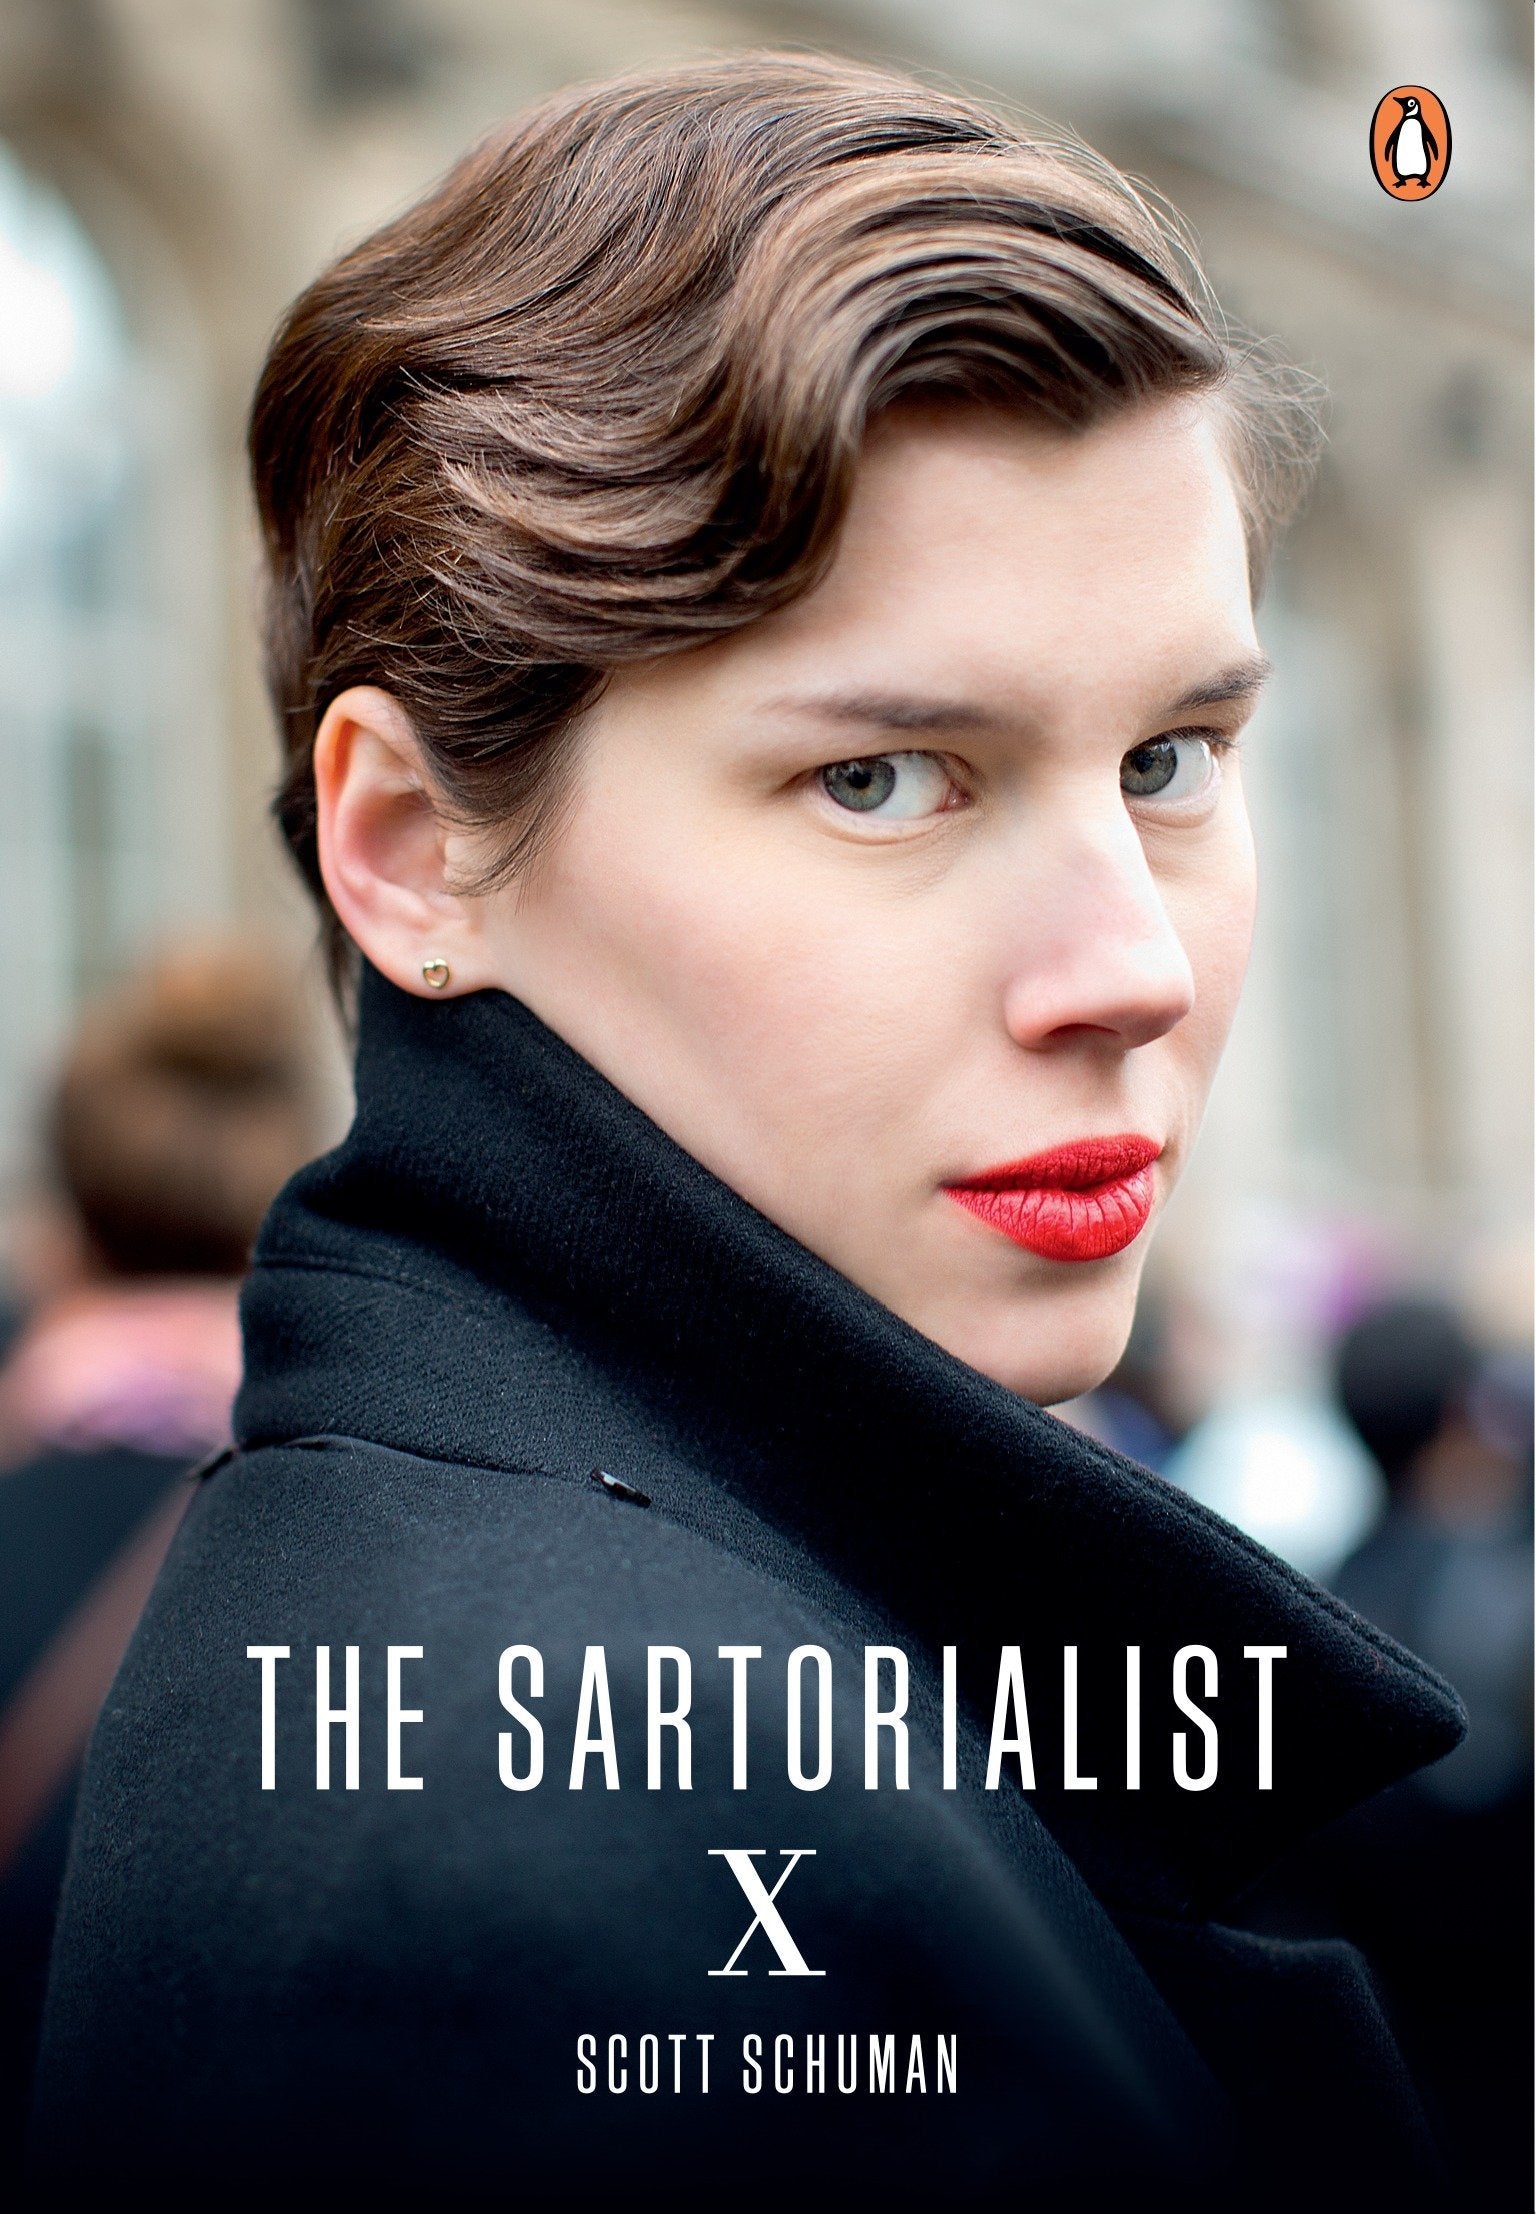 The Sartorialist: X by Scott Schuman